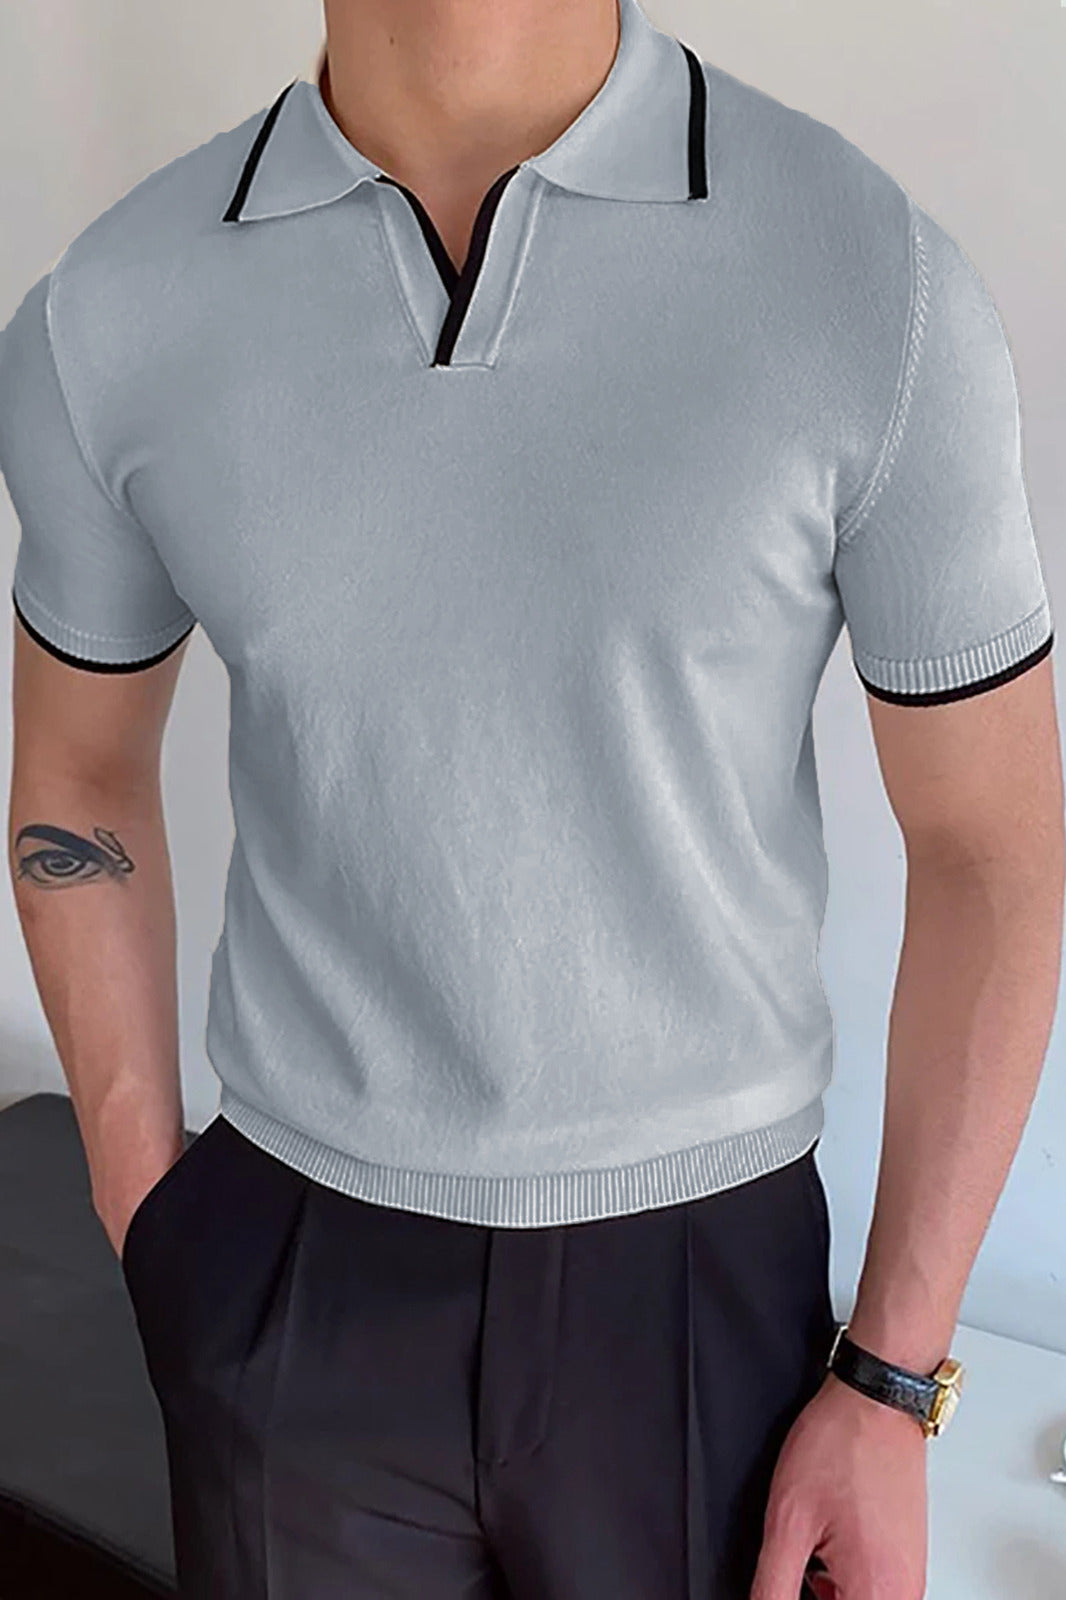 Plain Classic Collar Jumper Polo Shirt